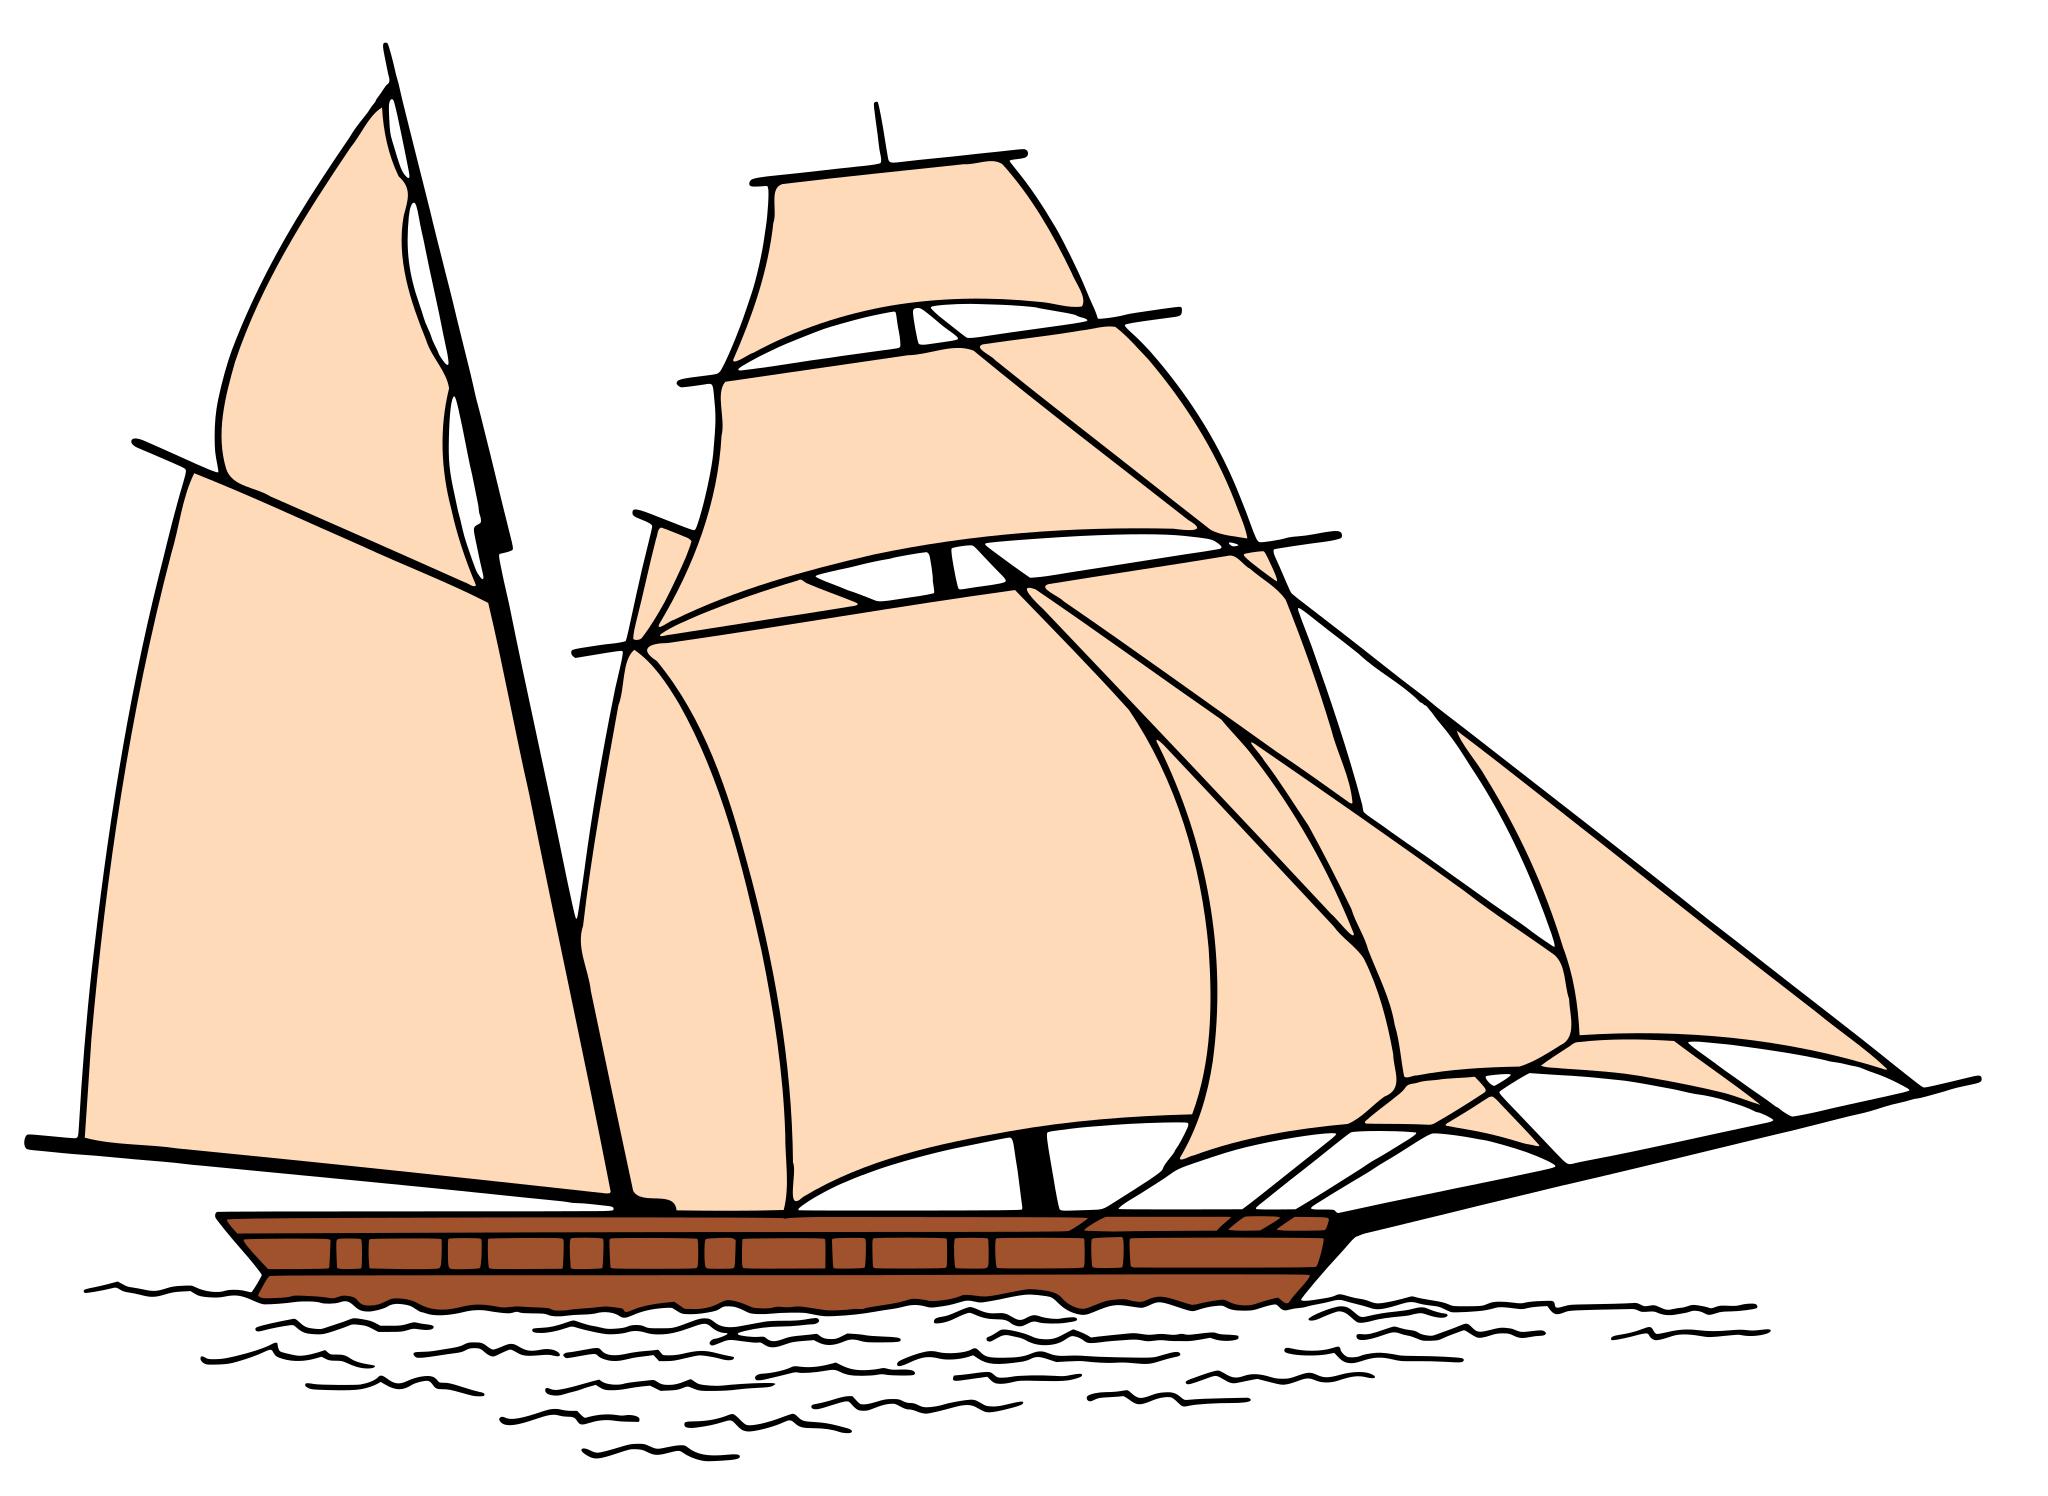 Картинка корабля с парусами для детей